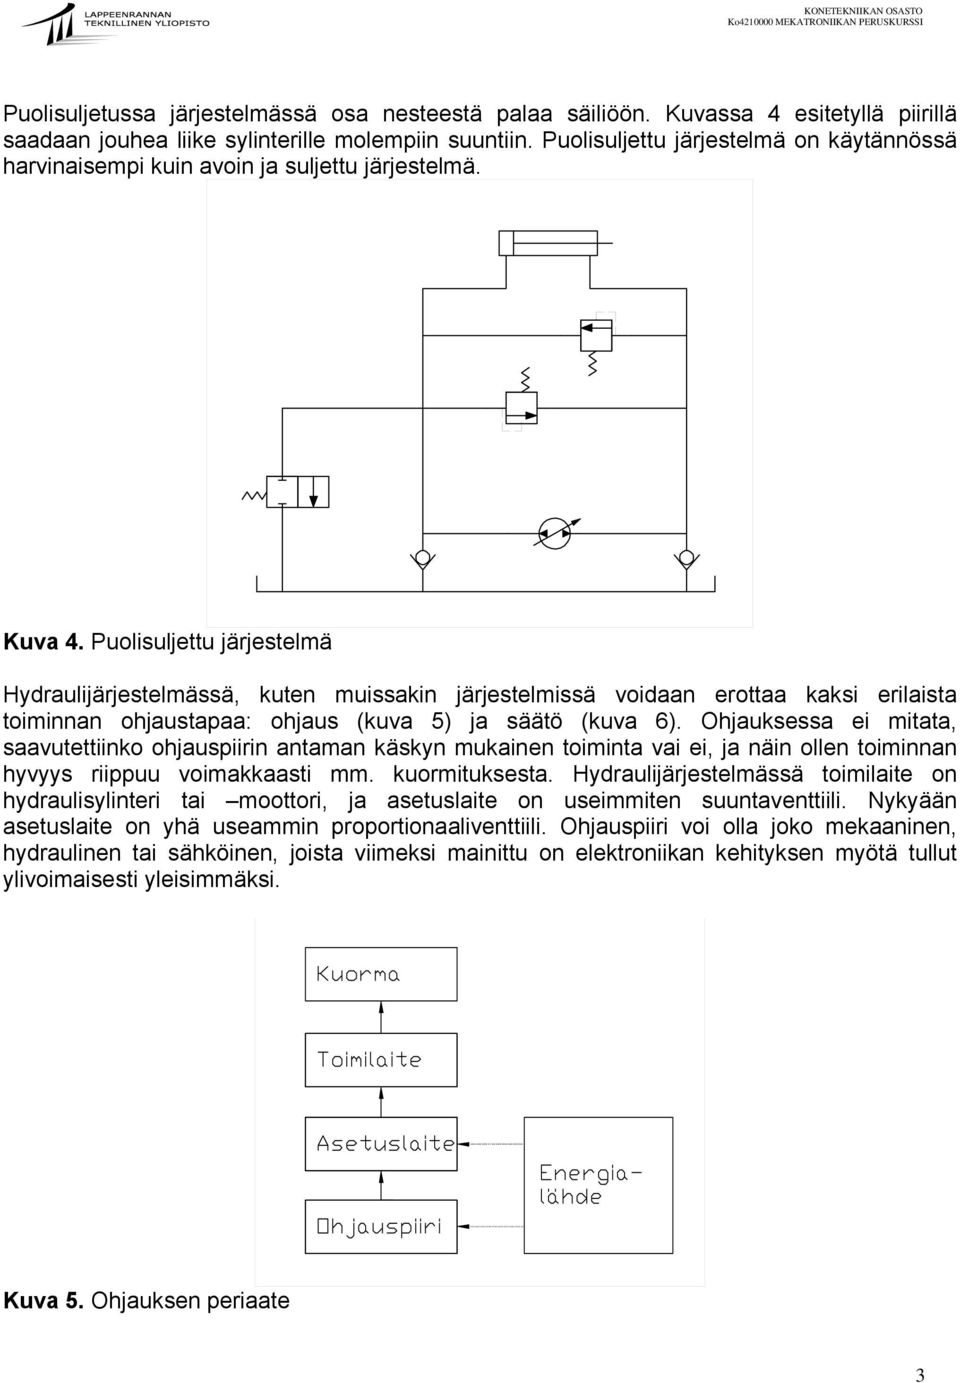 Puolisuljettu järjestelmä Hydraulijärjestelmässä, kuten muissakin järjestel voidaan erottaa kaksi erilaista toiminnan ohjaustapaa: ohjaus (kuva 5) ja säätö (kuva 6).